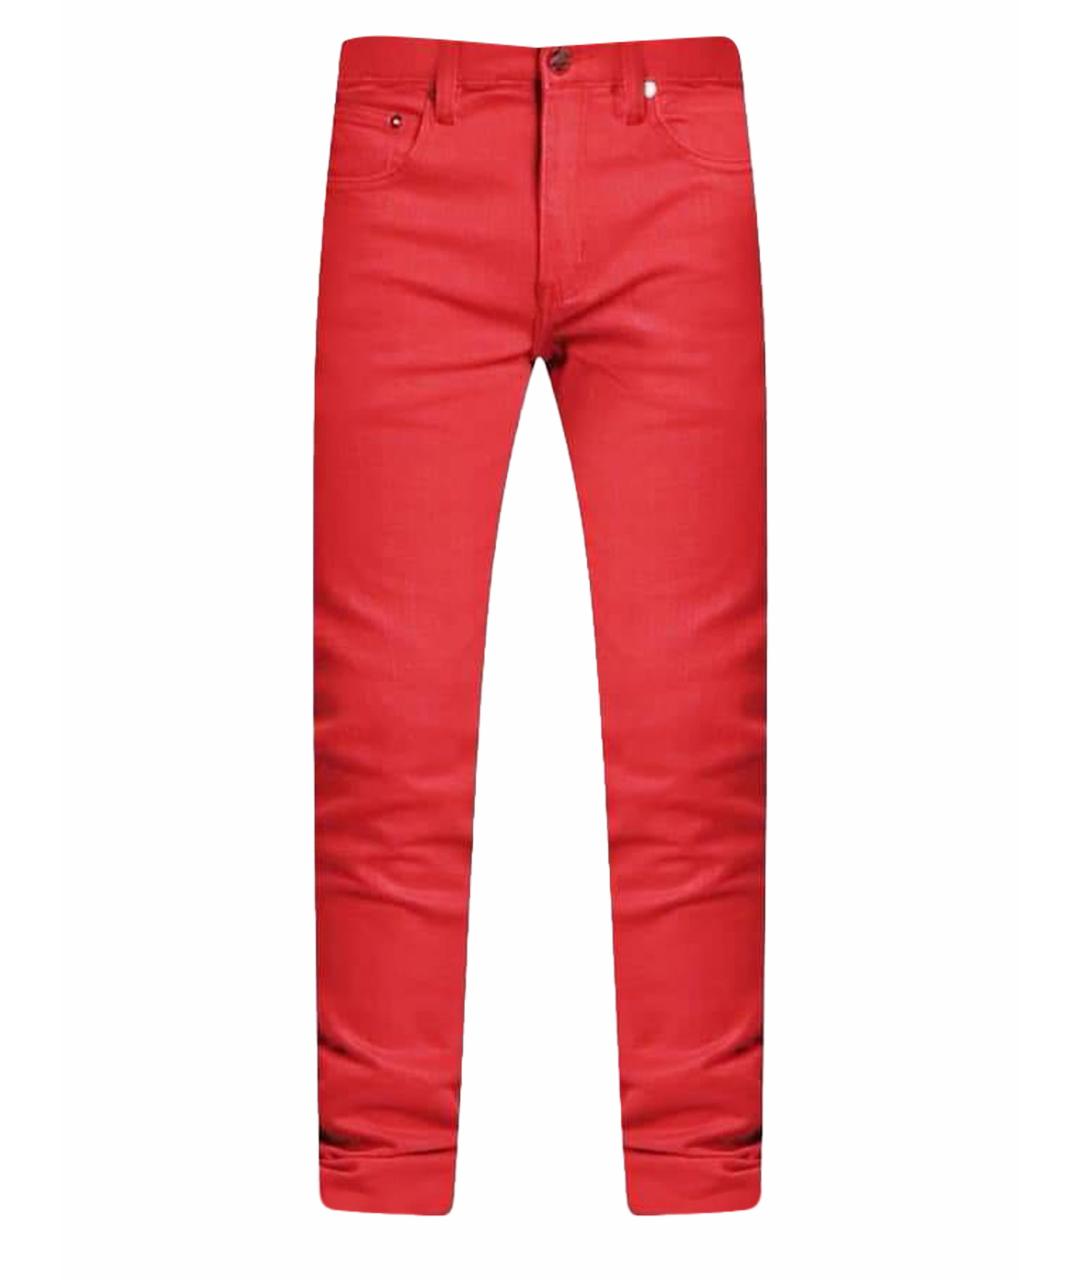 JOHN RICHMOND Красные хлопковые джинсы скинни, фото 1